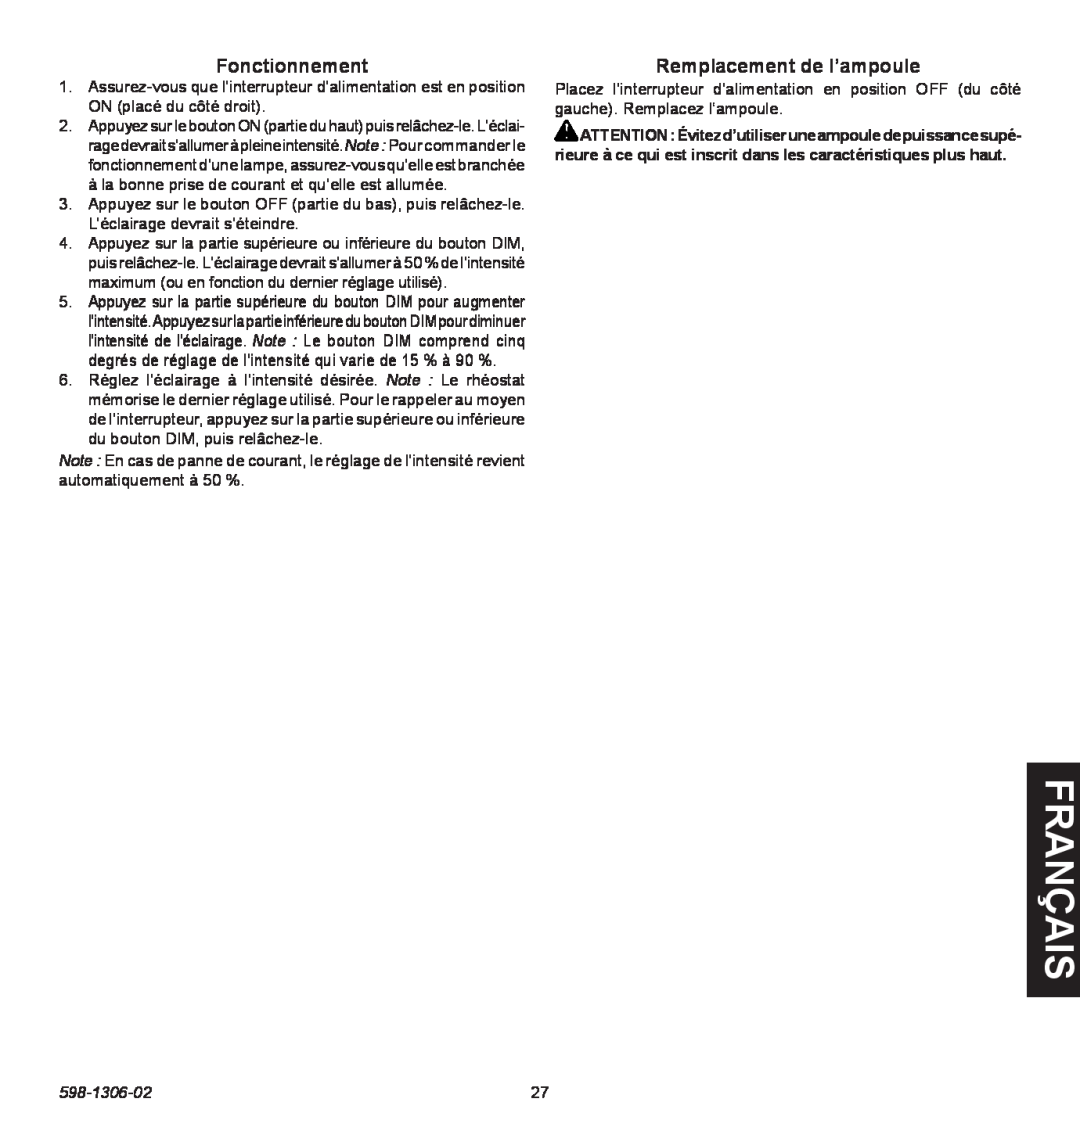 Heath Zenith 598-1306-02 manual is nça fra, Fonctionnement, Remplacement de l’ampoule 